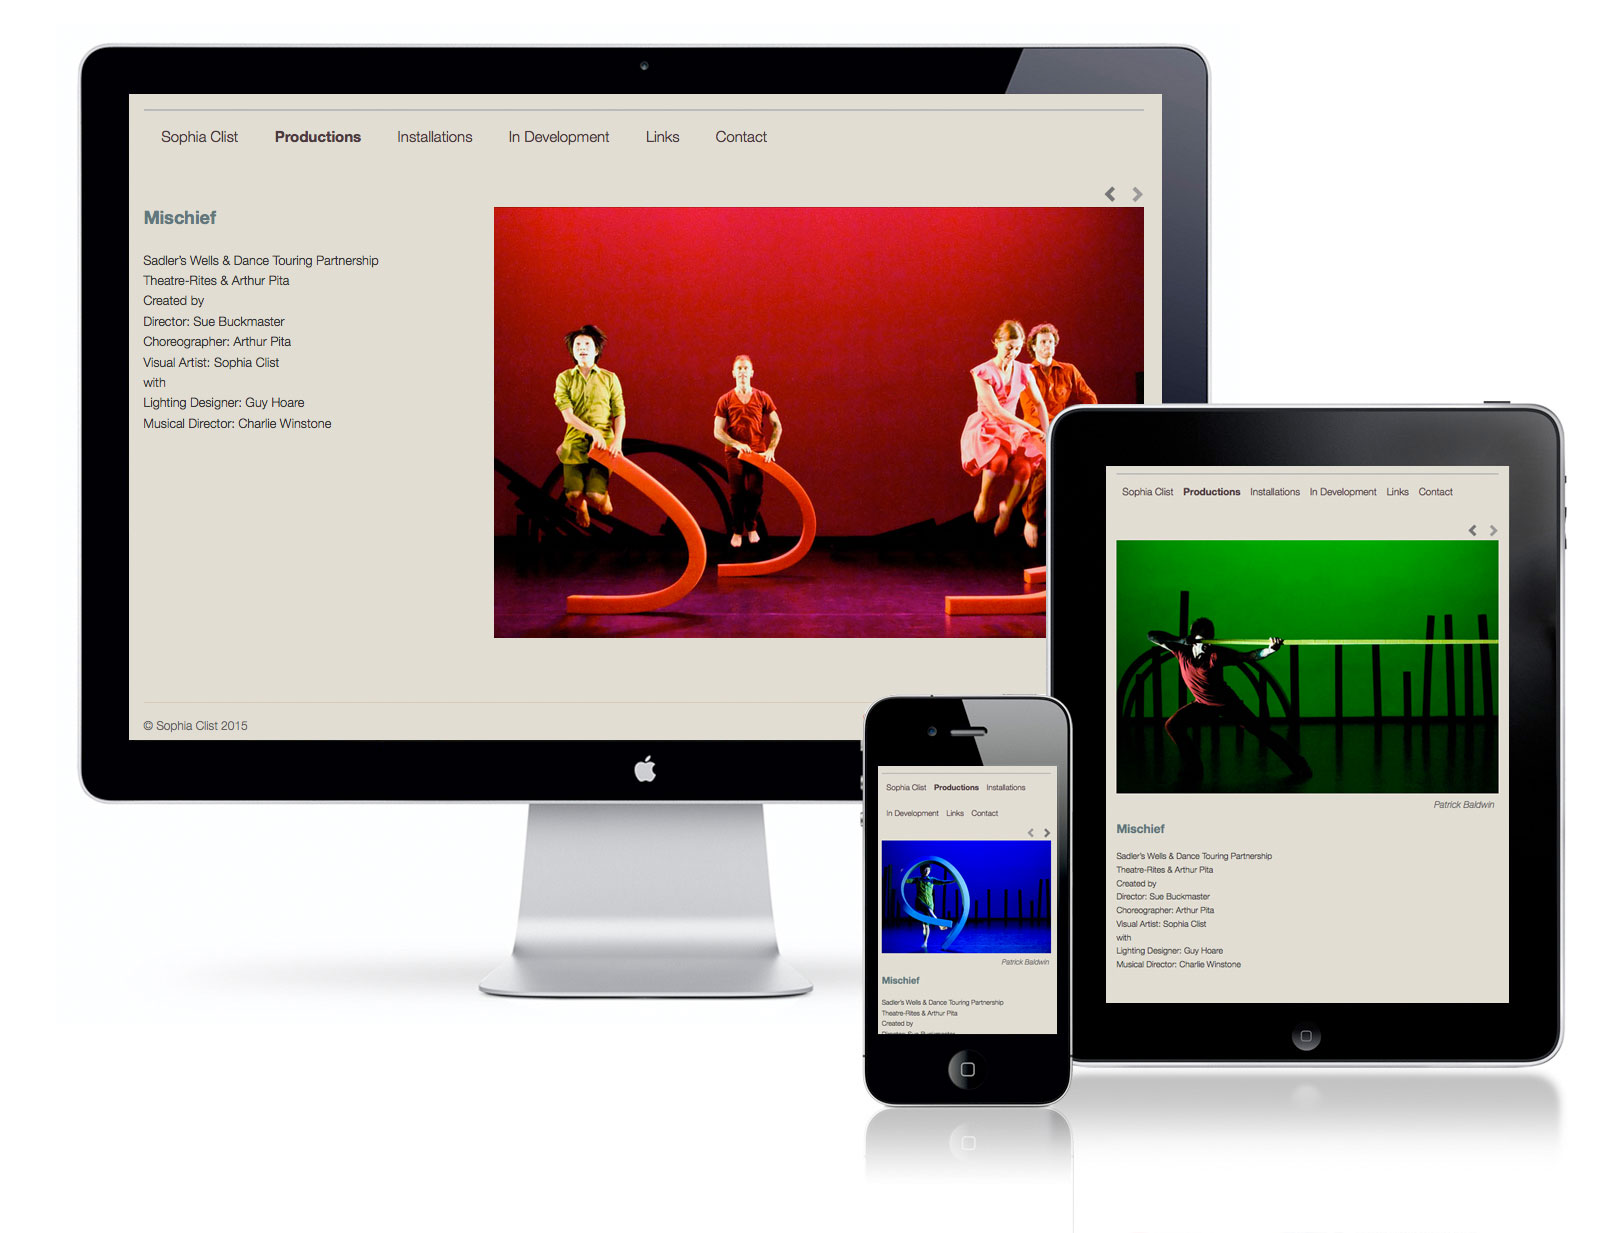 sophia clist website design by pynto